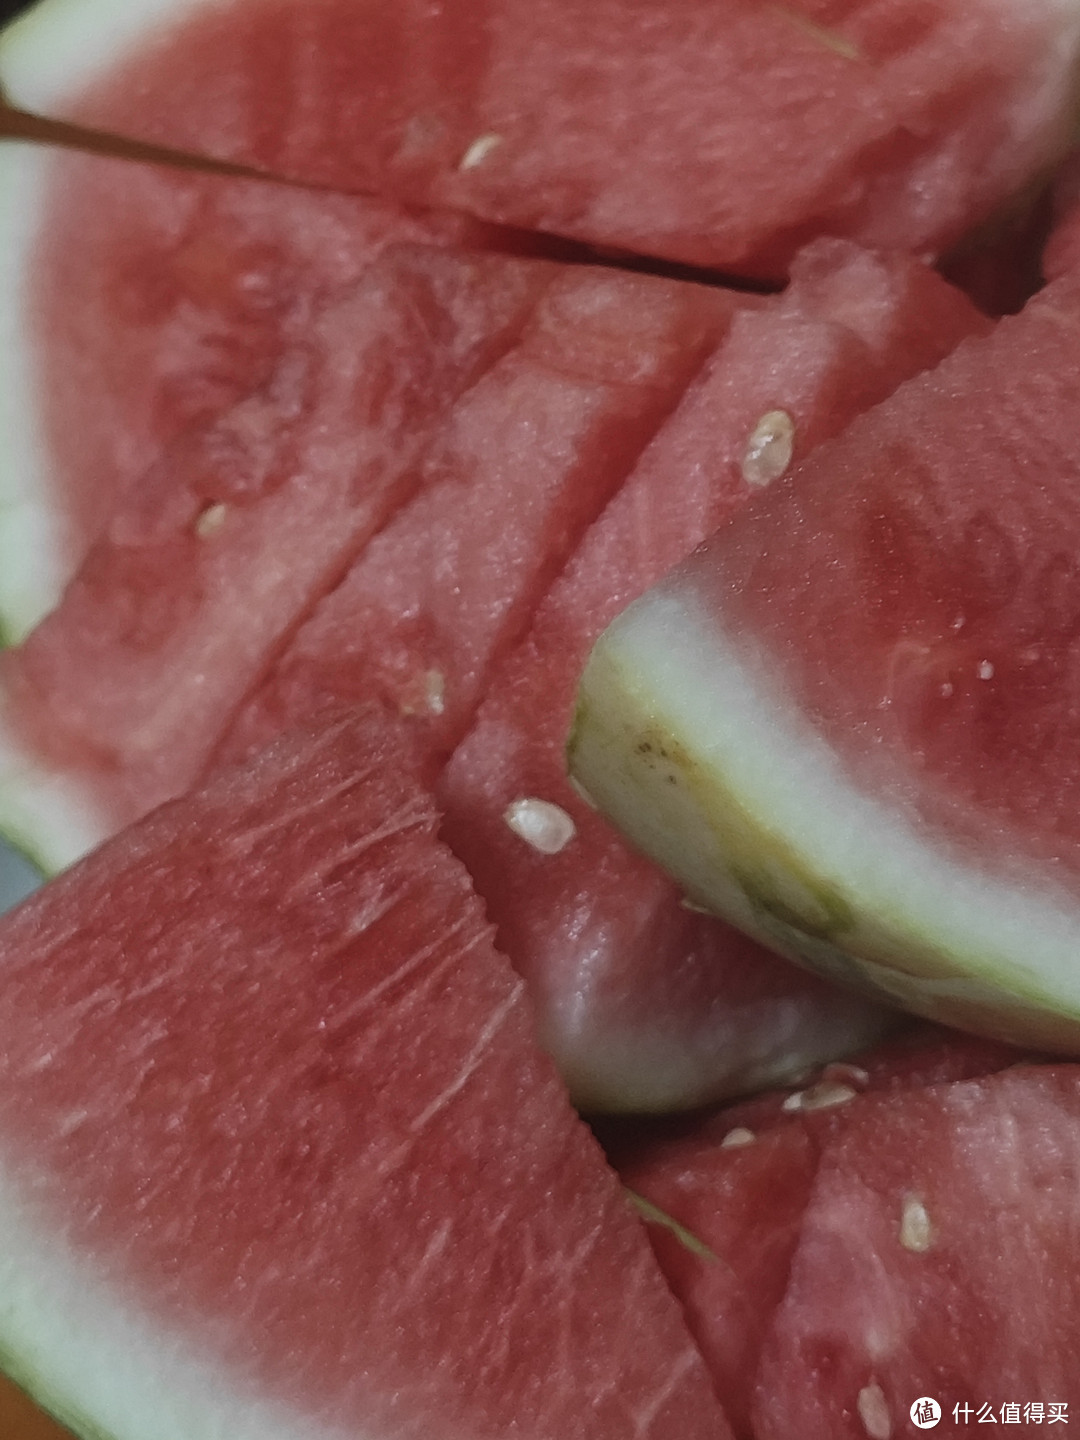 夏天必吃的水果之一就是西瓜